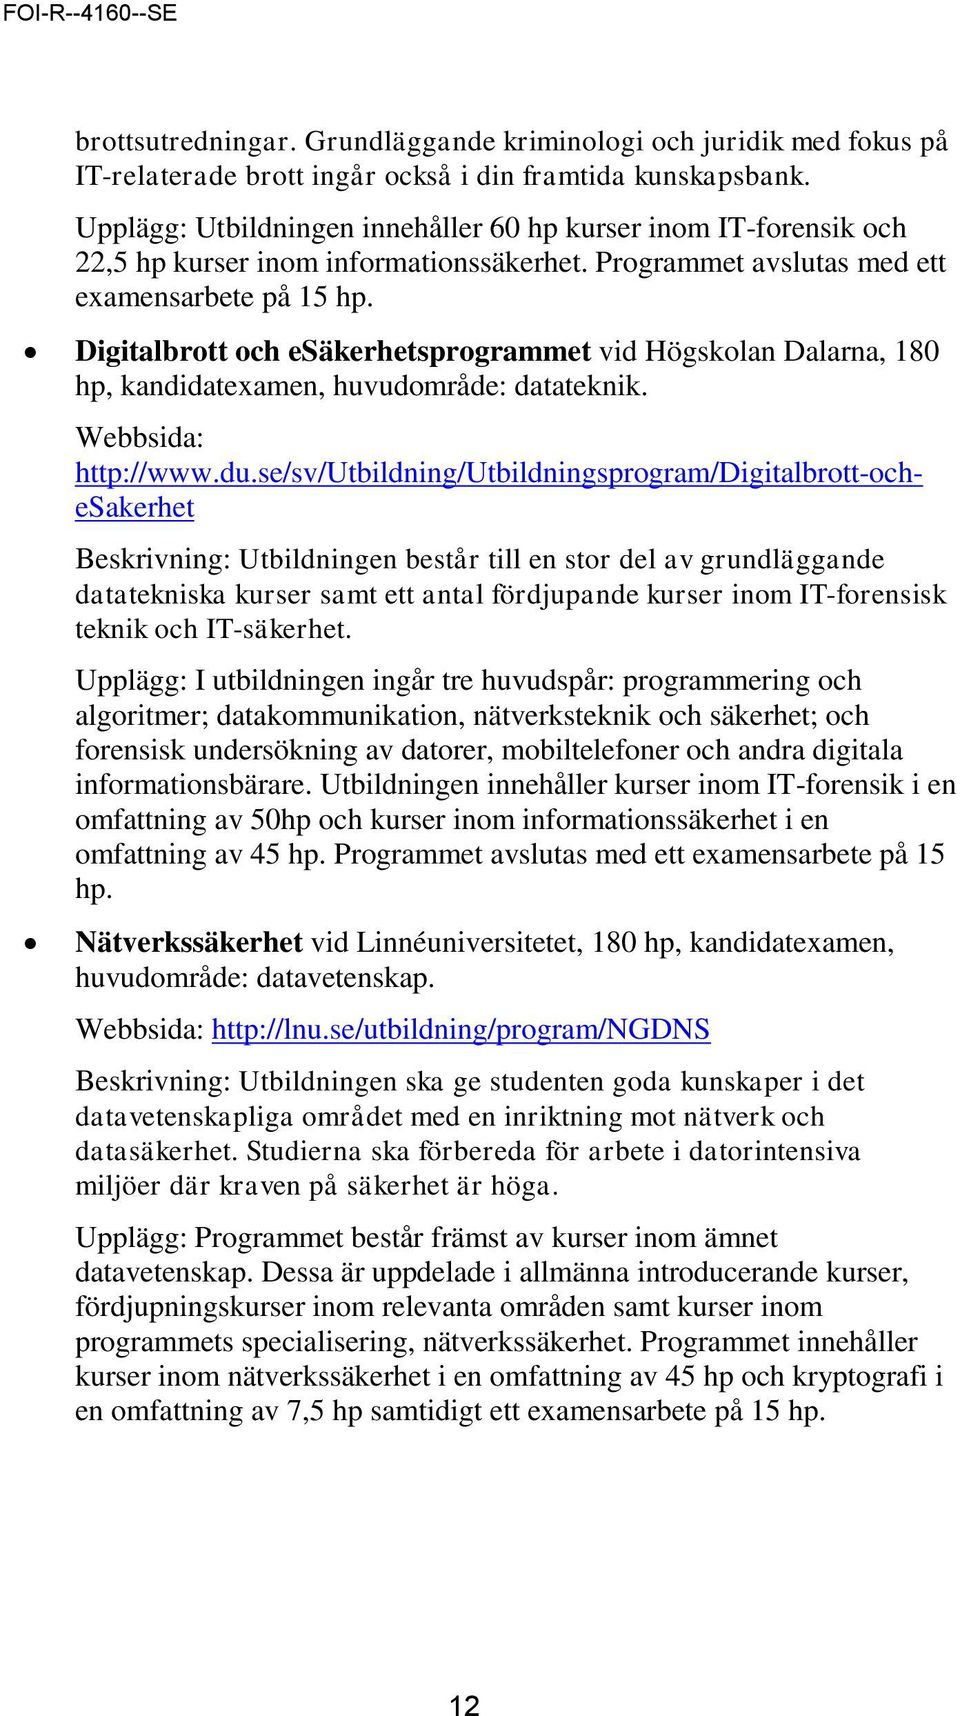 Digitalbrott och esäkerhetsprogrammet vid Högskolan Dalarna, 180 hp, kandidatexamen, huvudområde: datateknik. Webbsida: http://www.du.